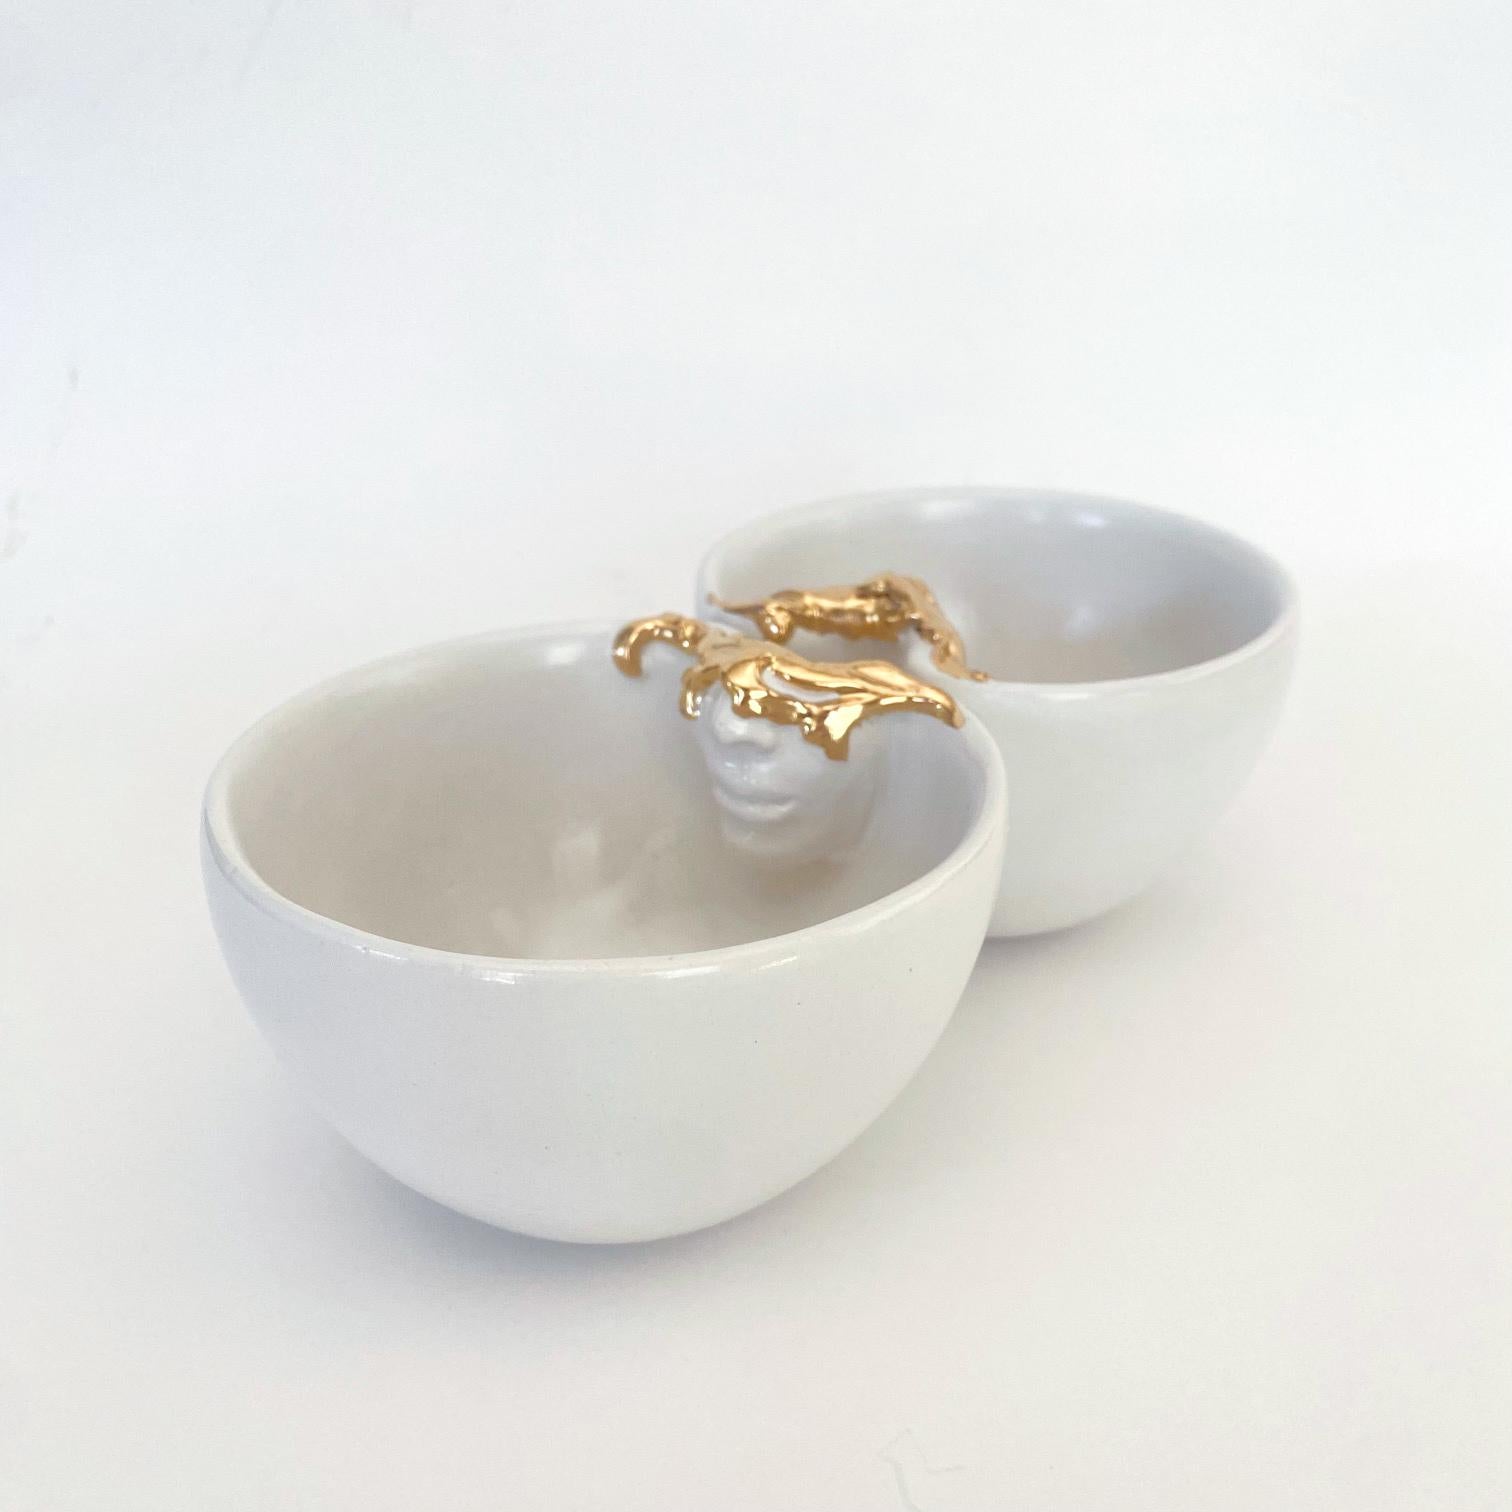 Un ensemble de 2 tasses en céramique fabriquées à la main par l'artiste céramiste Hulya Sozer. 
Or 12k lustré. Glaçage alimentaire. Matériaux non toxiques et sans plomb. 
Il peut être lavé au lave-vaisselle, mais il est recommandé de le laver à la